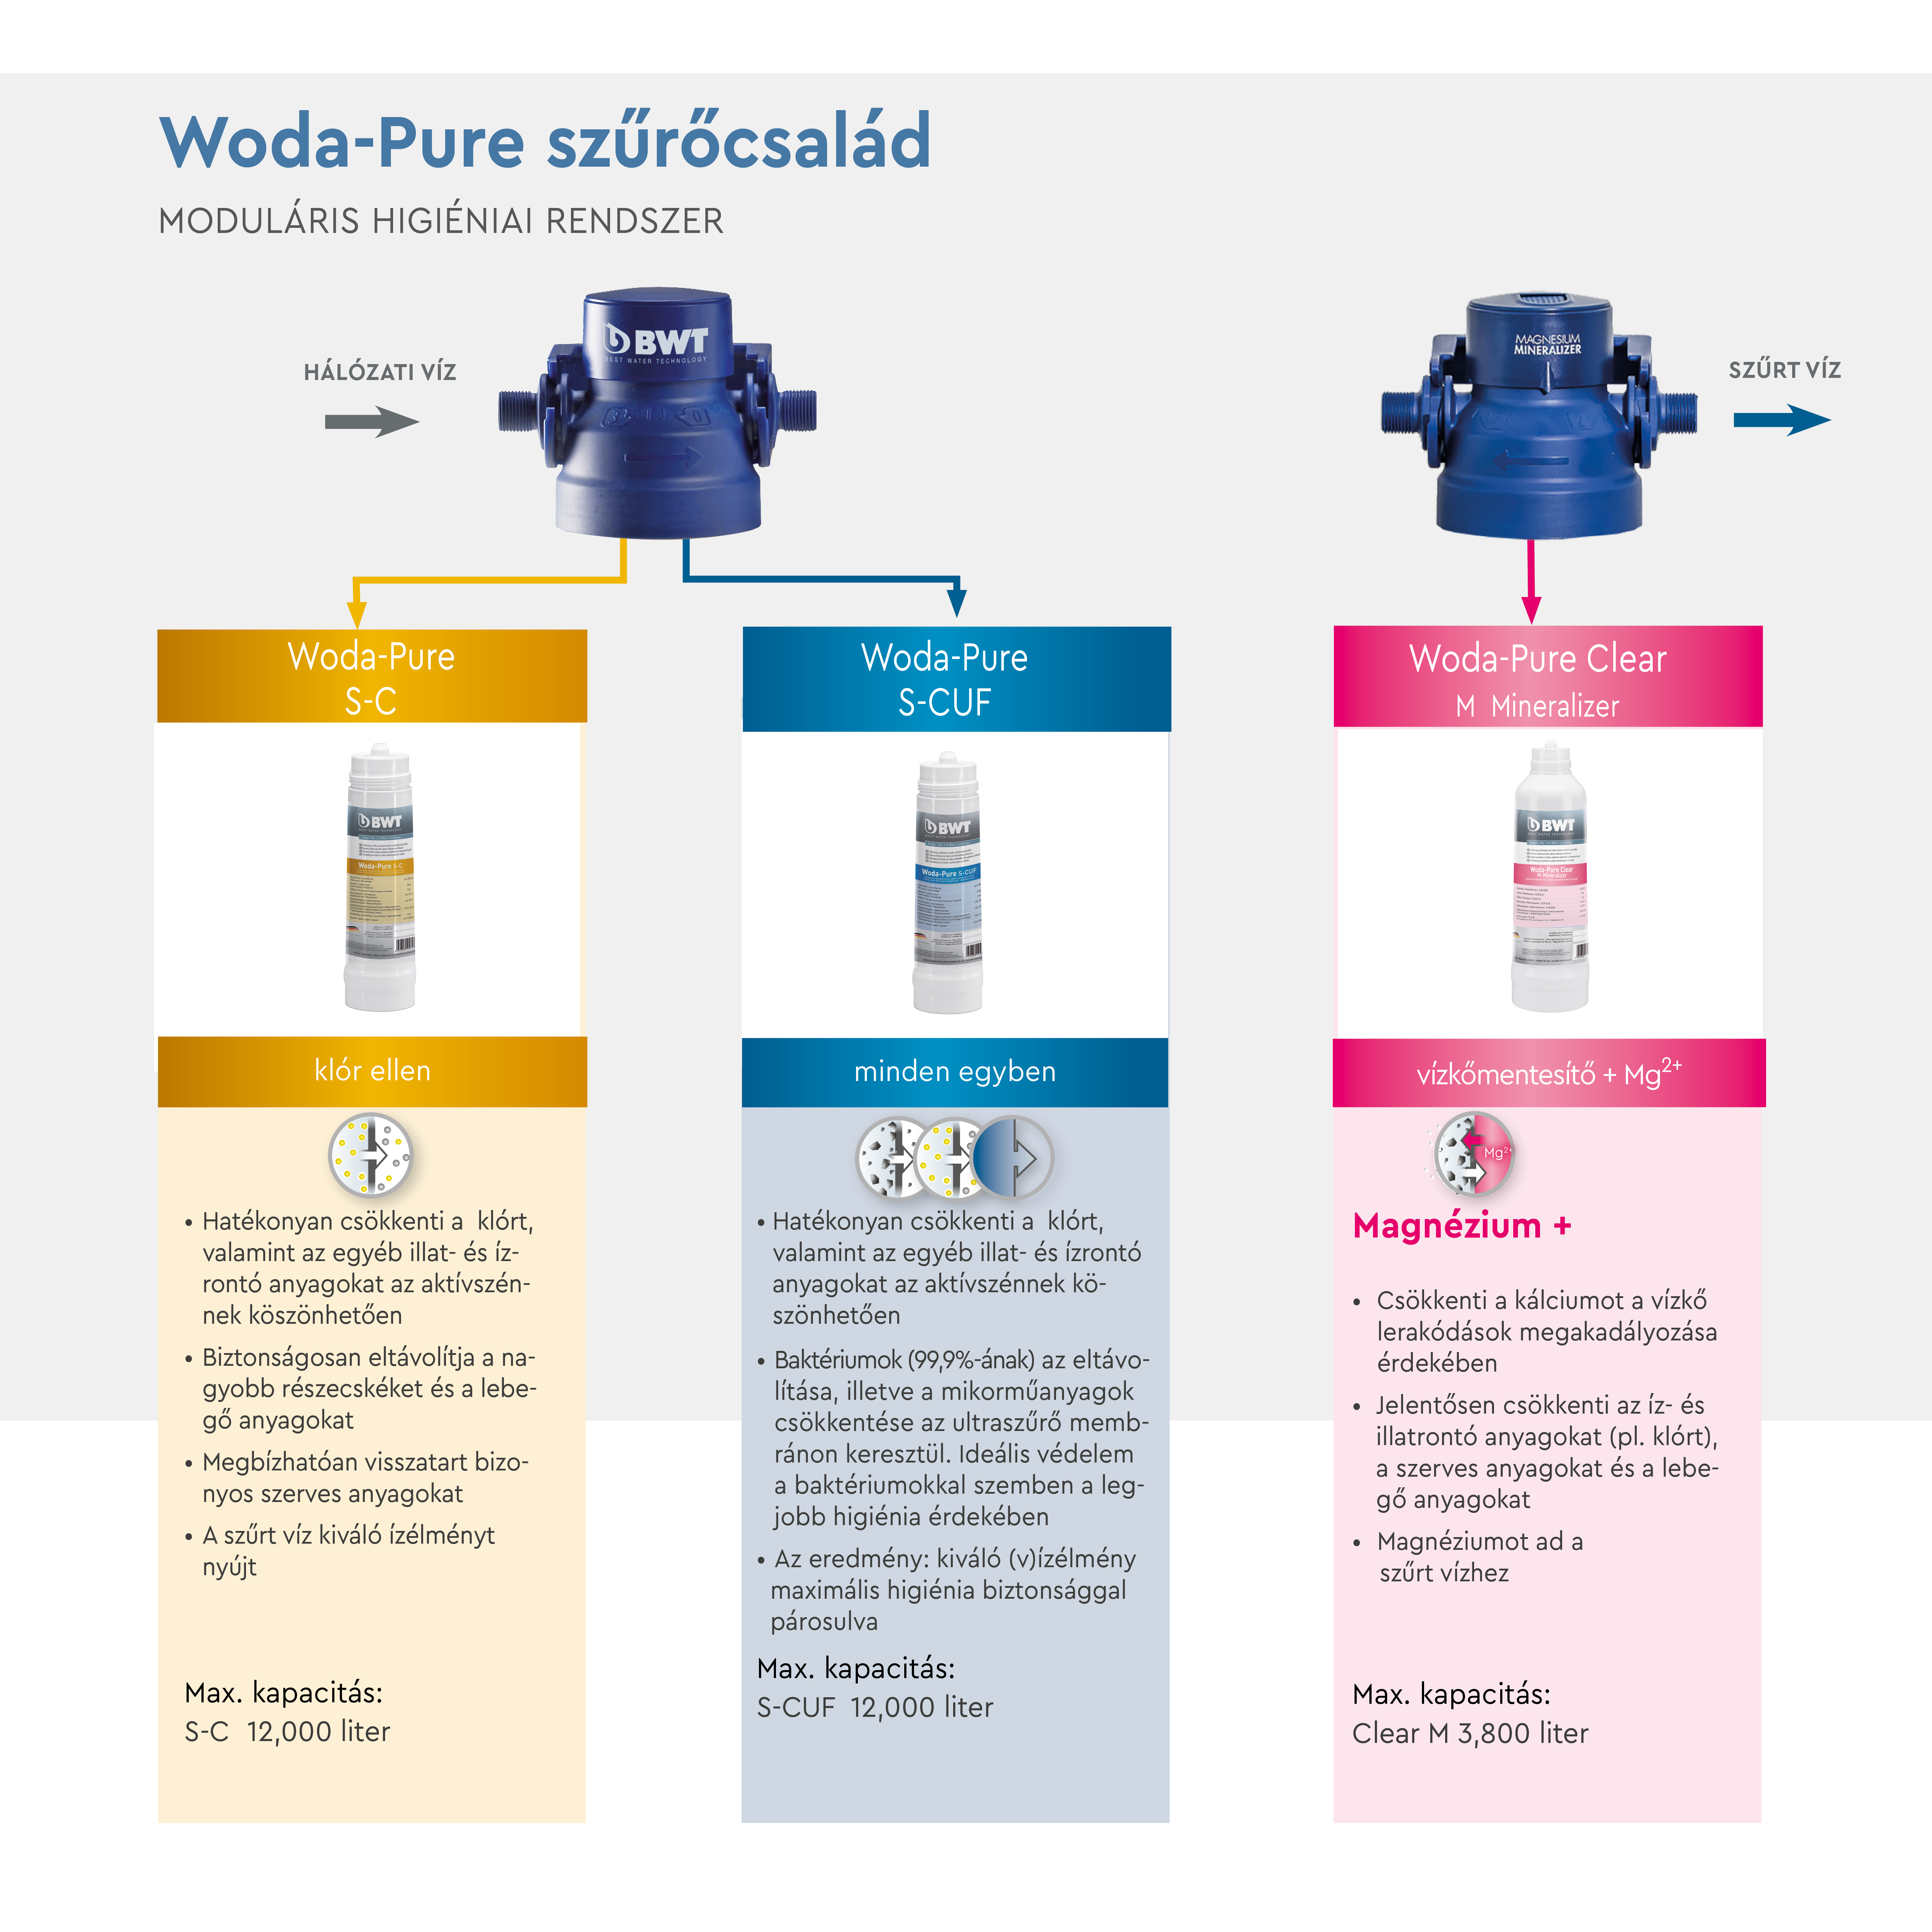 BWT Woda-Pure víztisztító termékcsalád